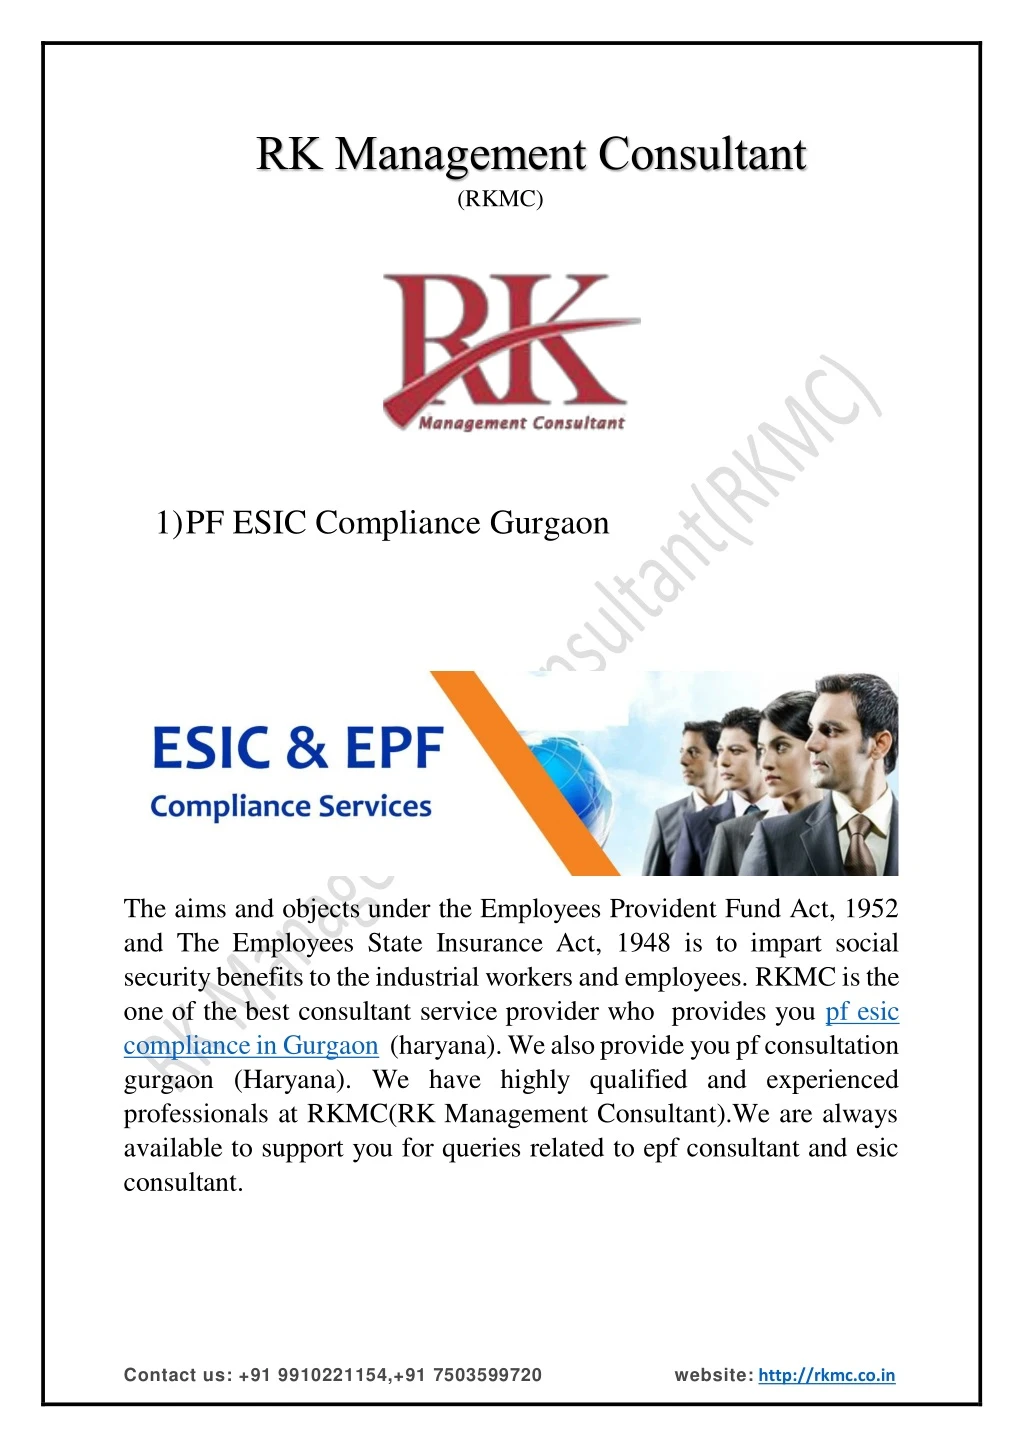 rk management consultant rkmc